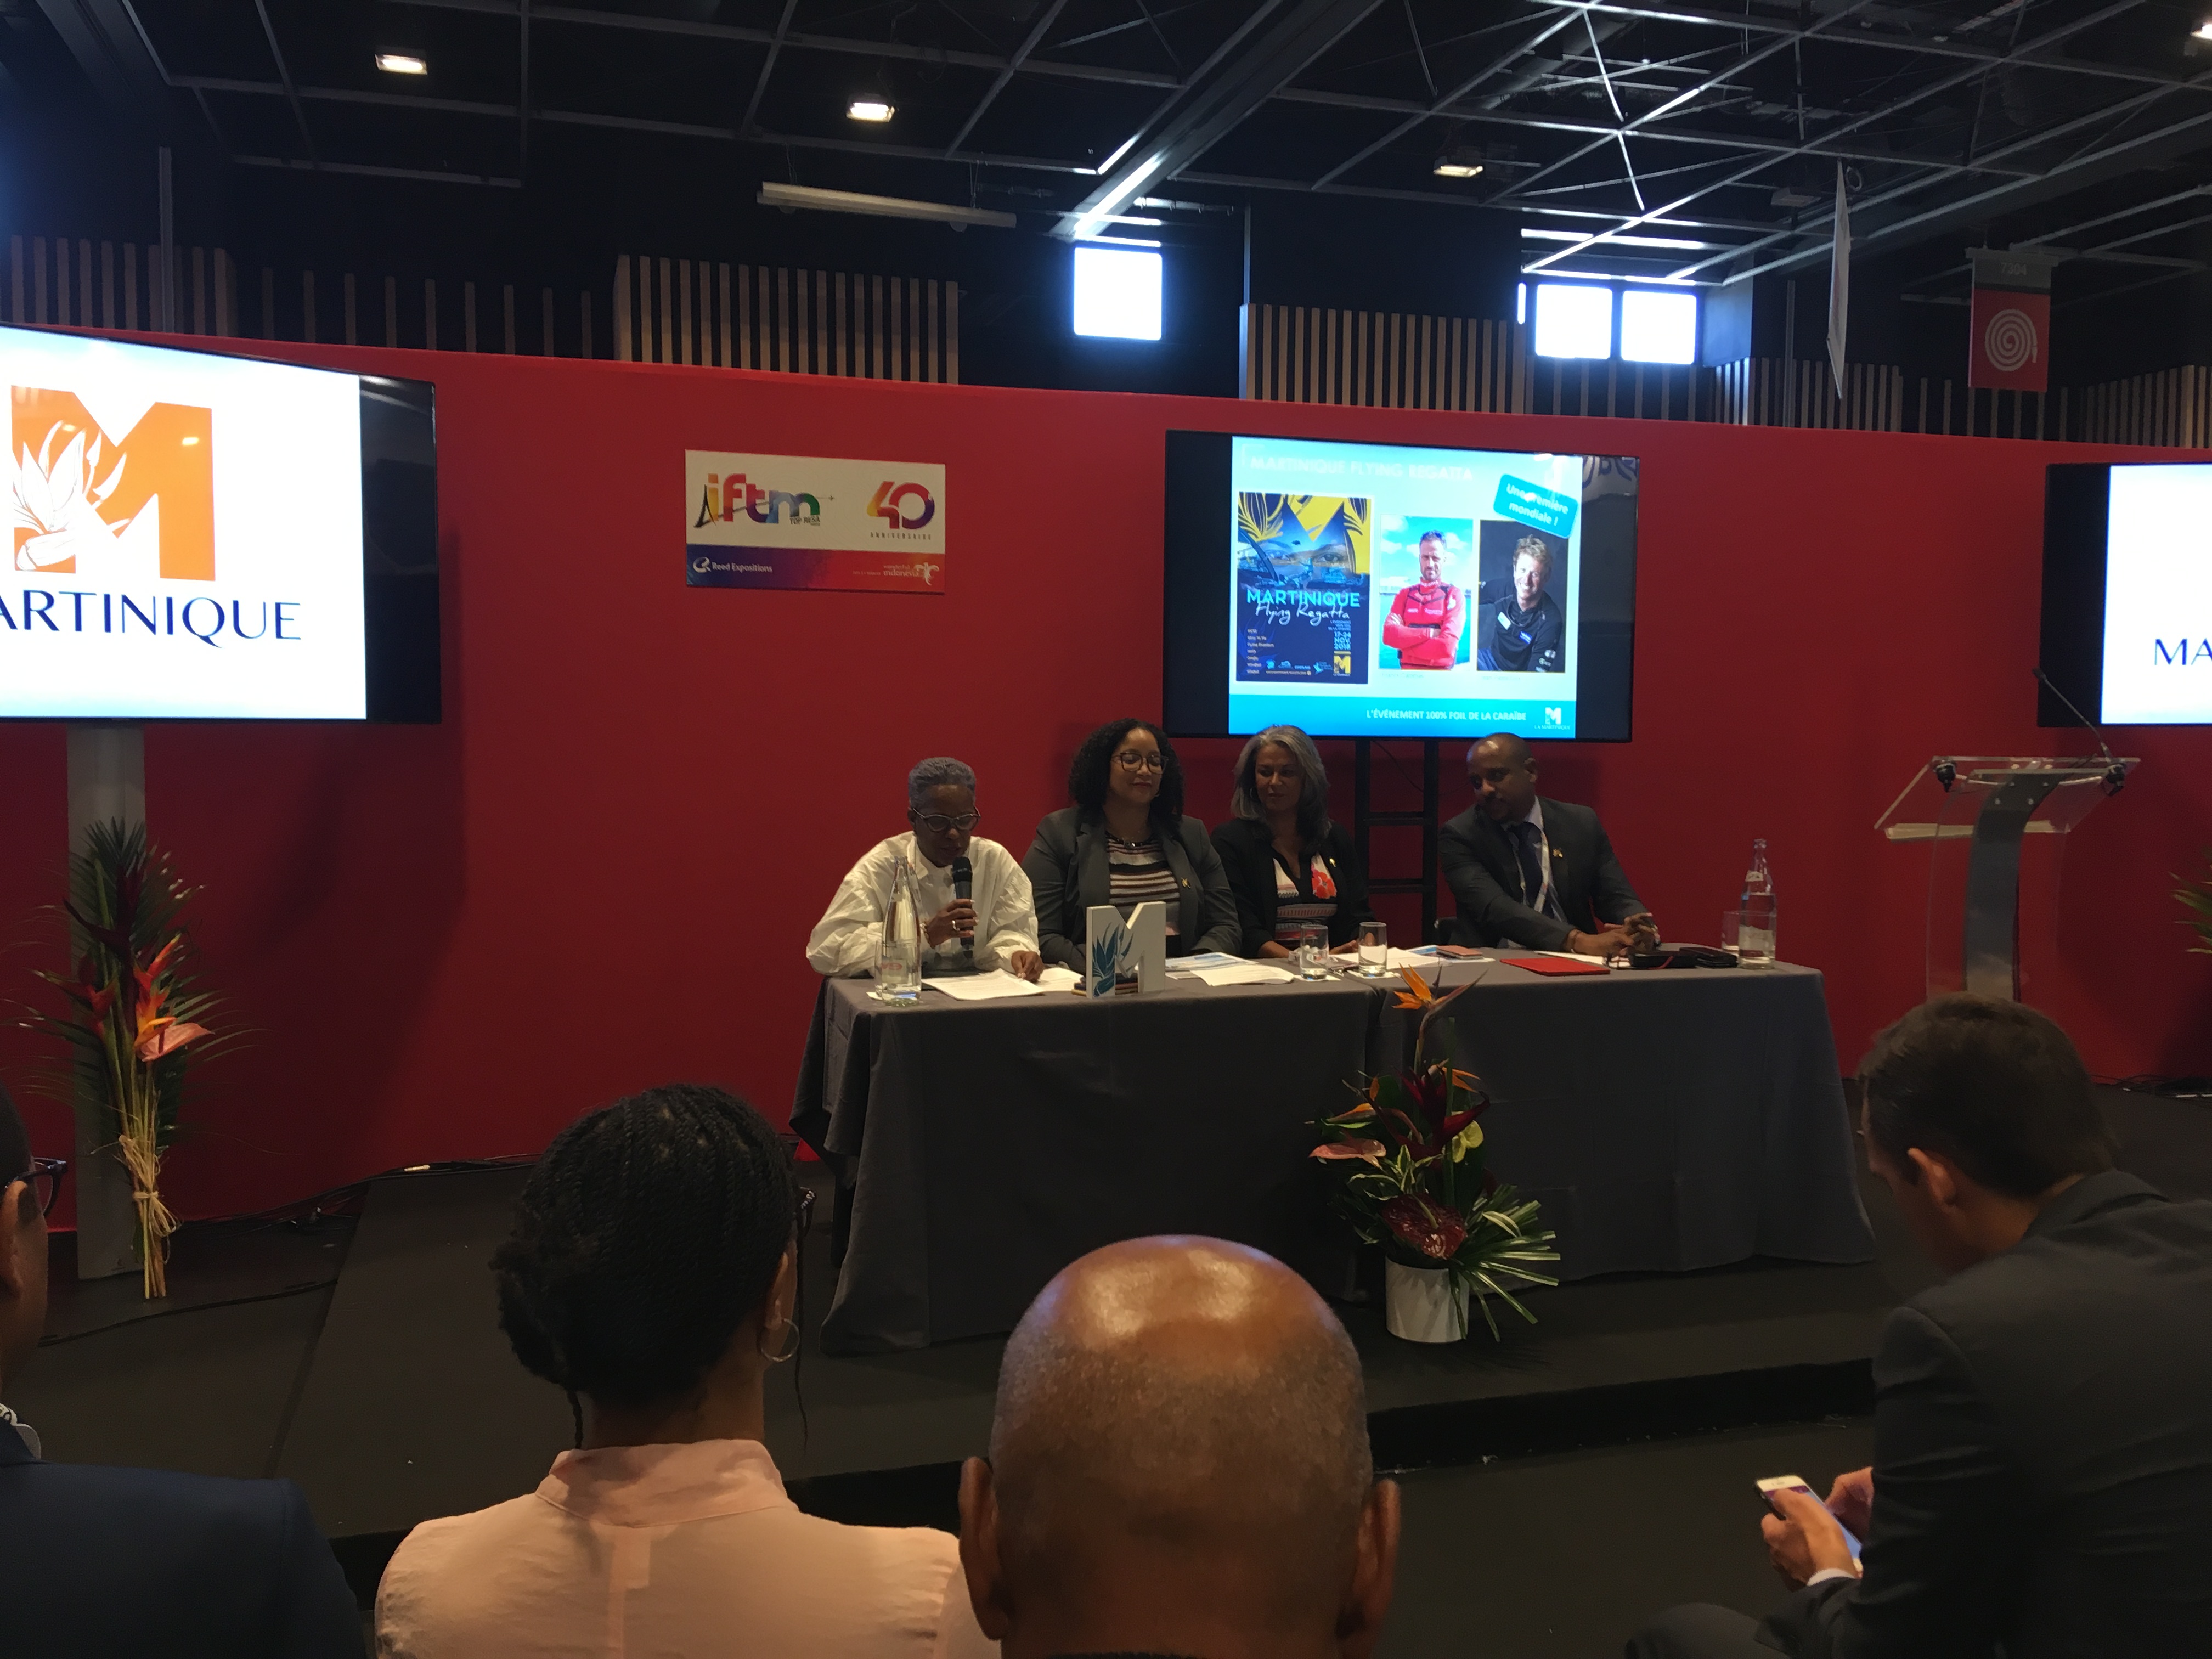 Le comité de direction du Comité martiniquais du tourisme lors d'une conférence de presse, le 26 septembre 2018, à l'IFTM Top Resa. - CL